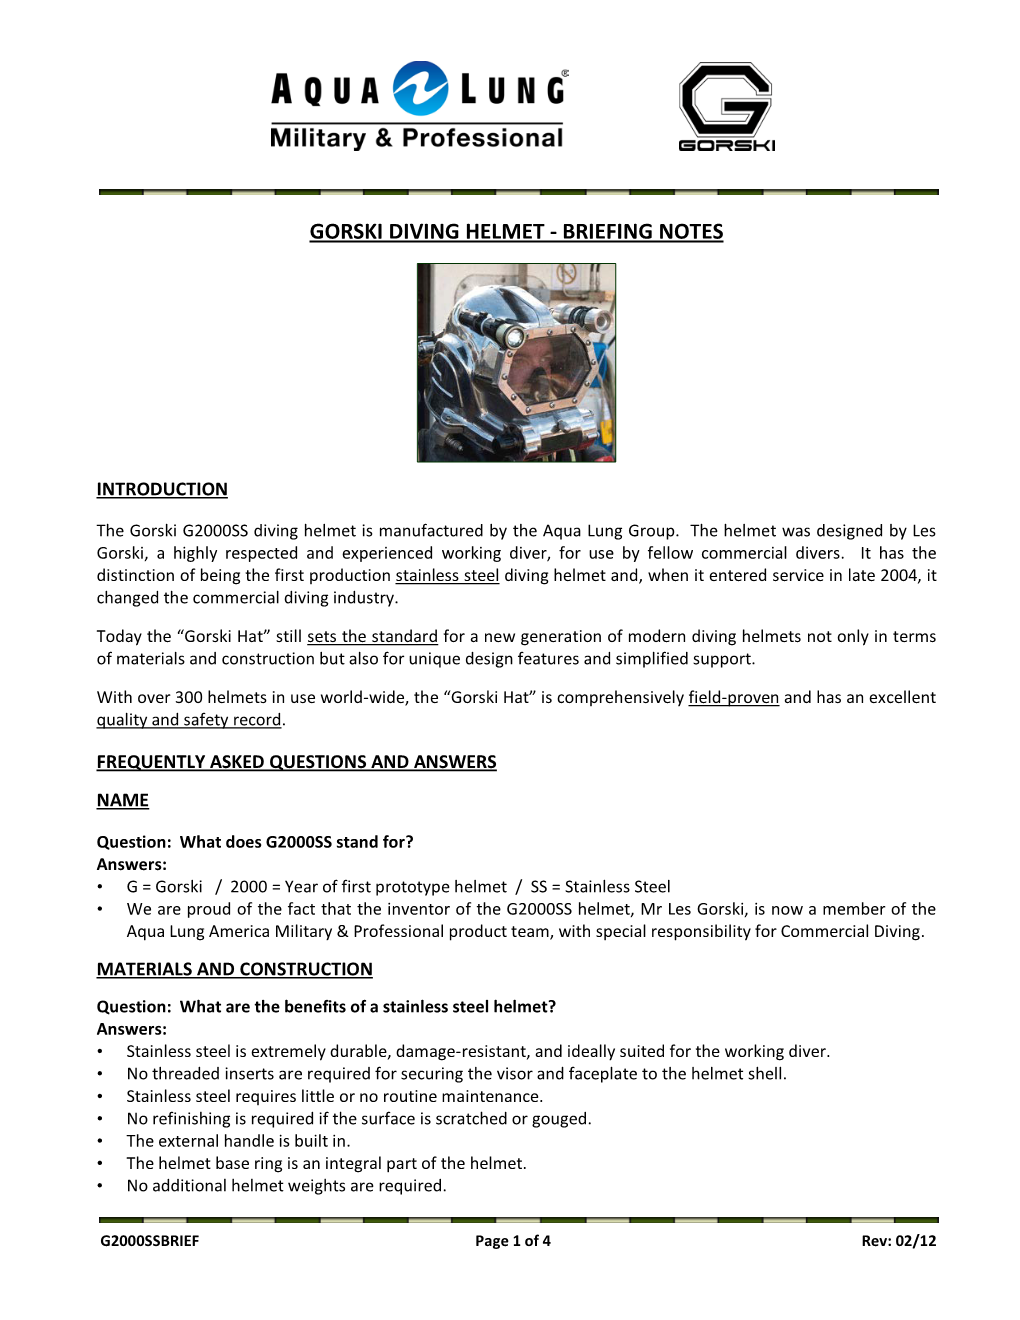 Gorski Diving Helmet - Briefing Notes